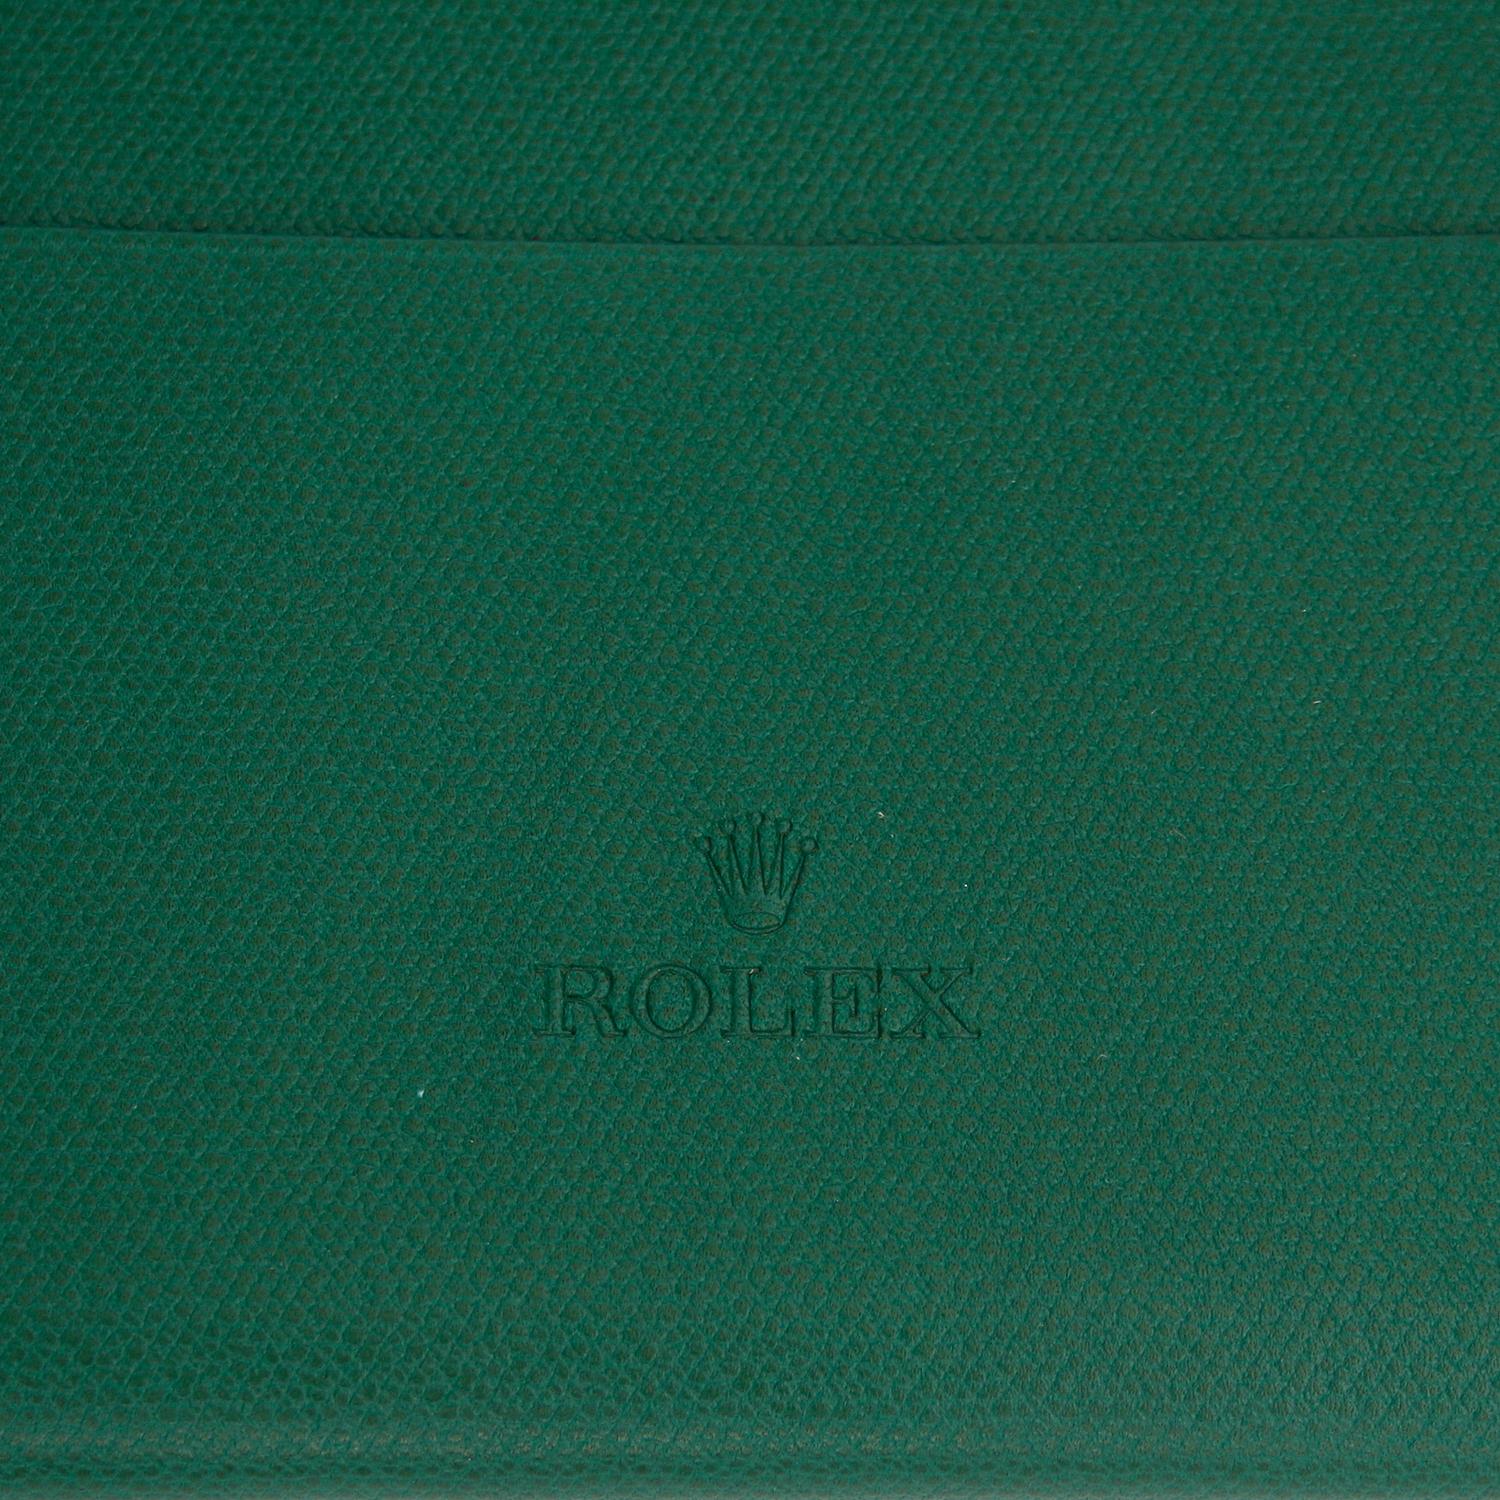 Très rare sac à main Rolex en cuir - Sac à main Rolex vert en cuir. Dimensions : 7 x 4,5 pouces. Peut être porté comme un sac à l'épaule ou comme un sac banane. Livré avec une sangle. Excellent pour être décontracté avec style. 